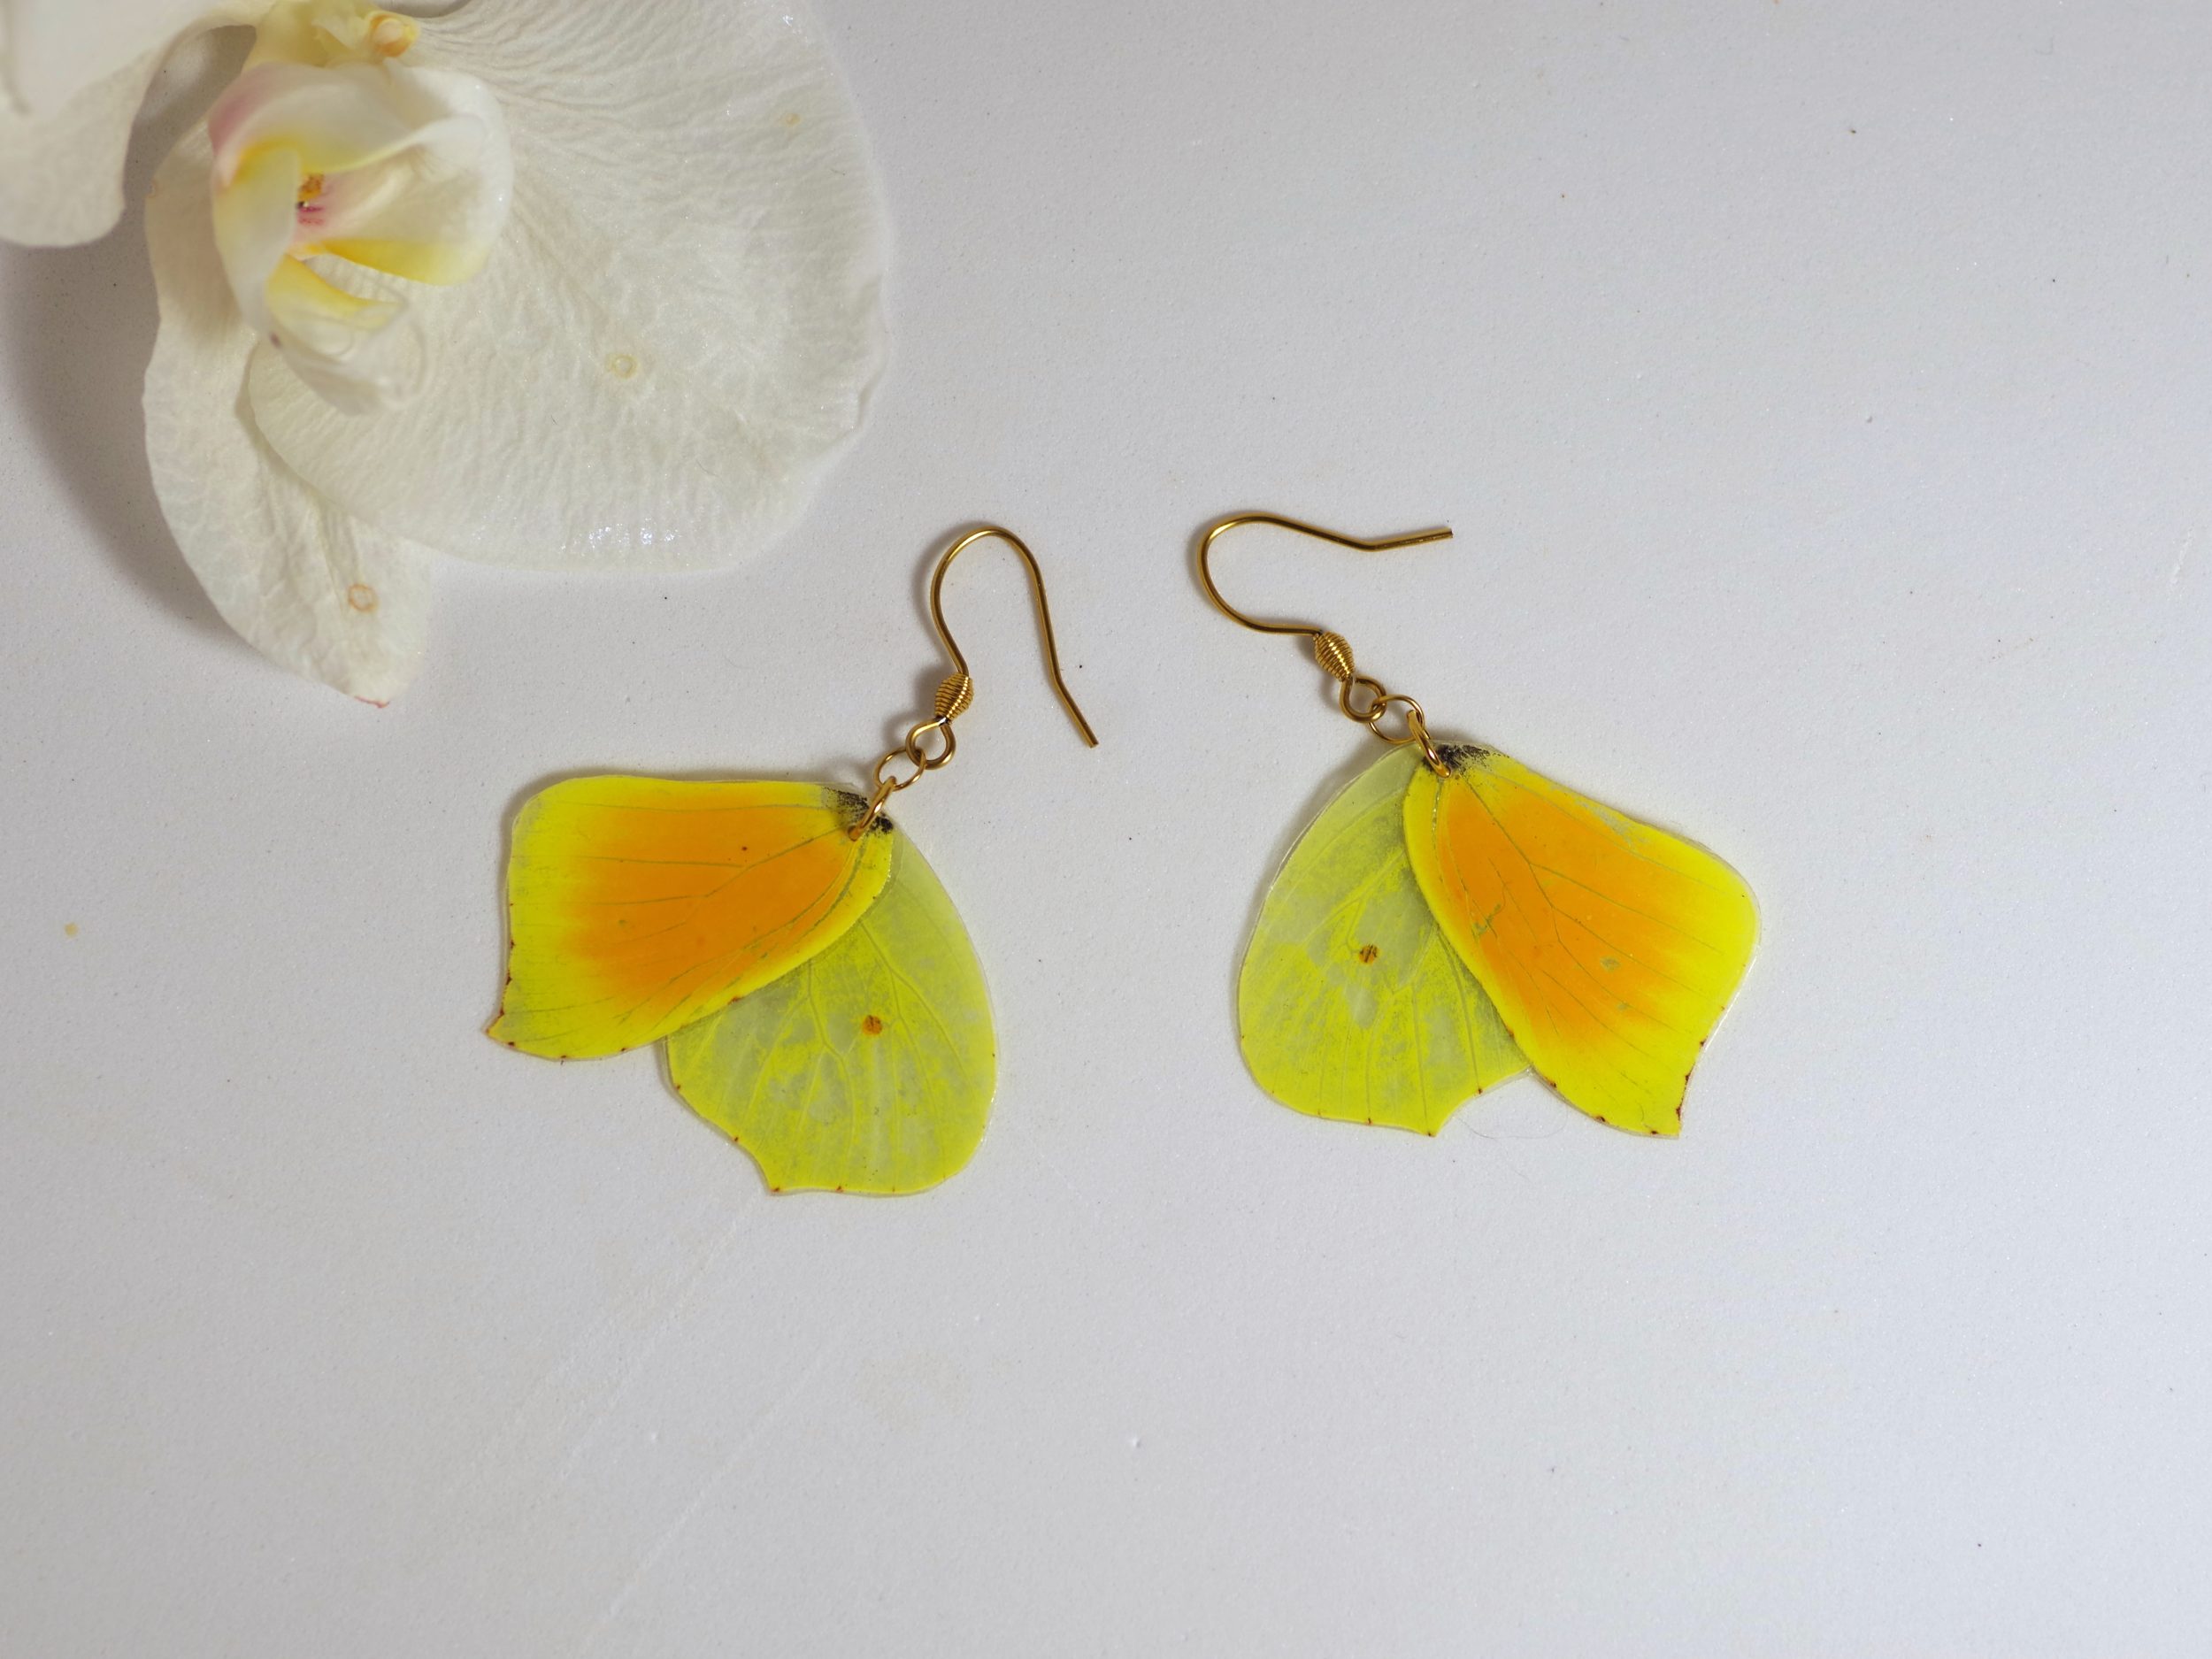 boucles d'oreilles réalisées avec des ailes de papillon orange et jaune, crochets dorés